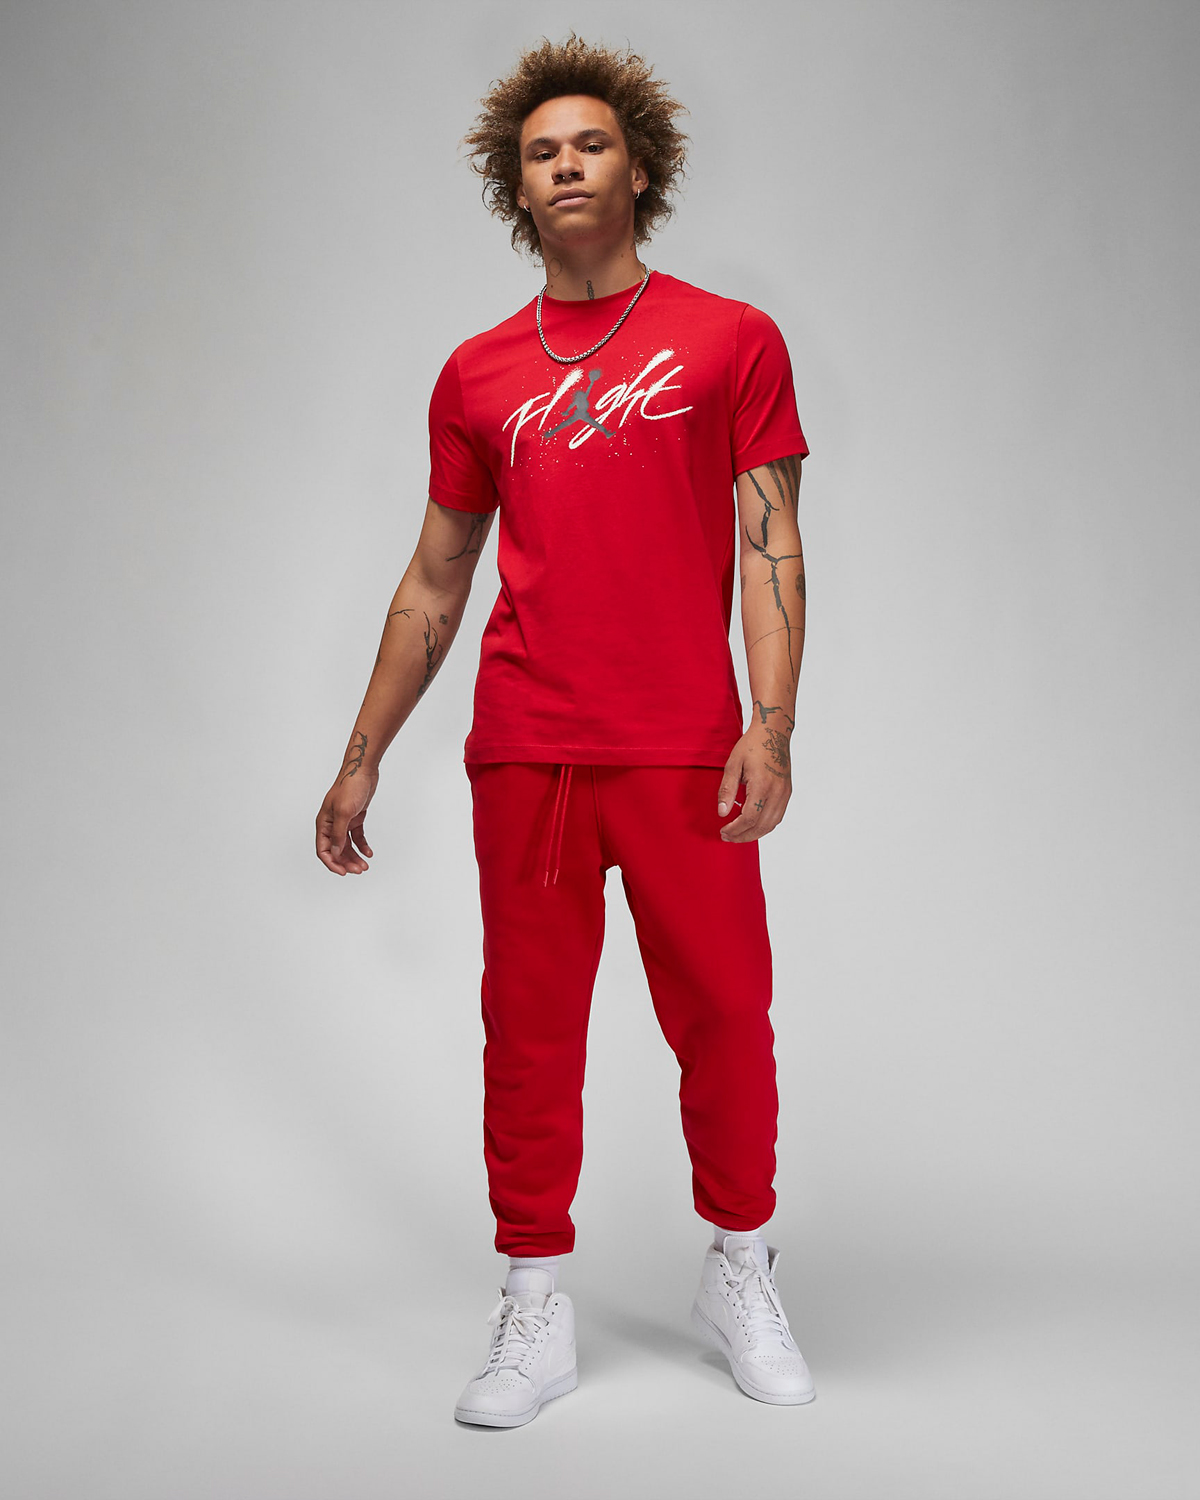 Jordan-Gym-Red-Clothing